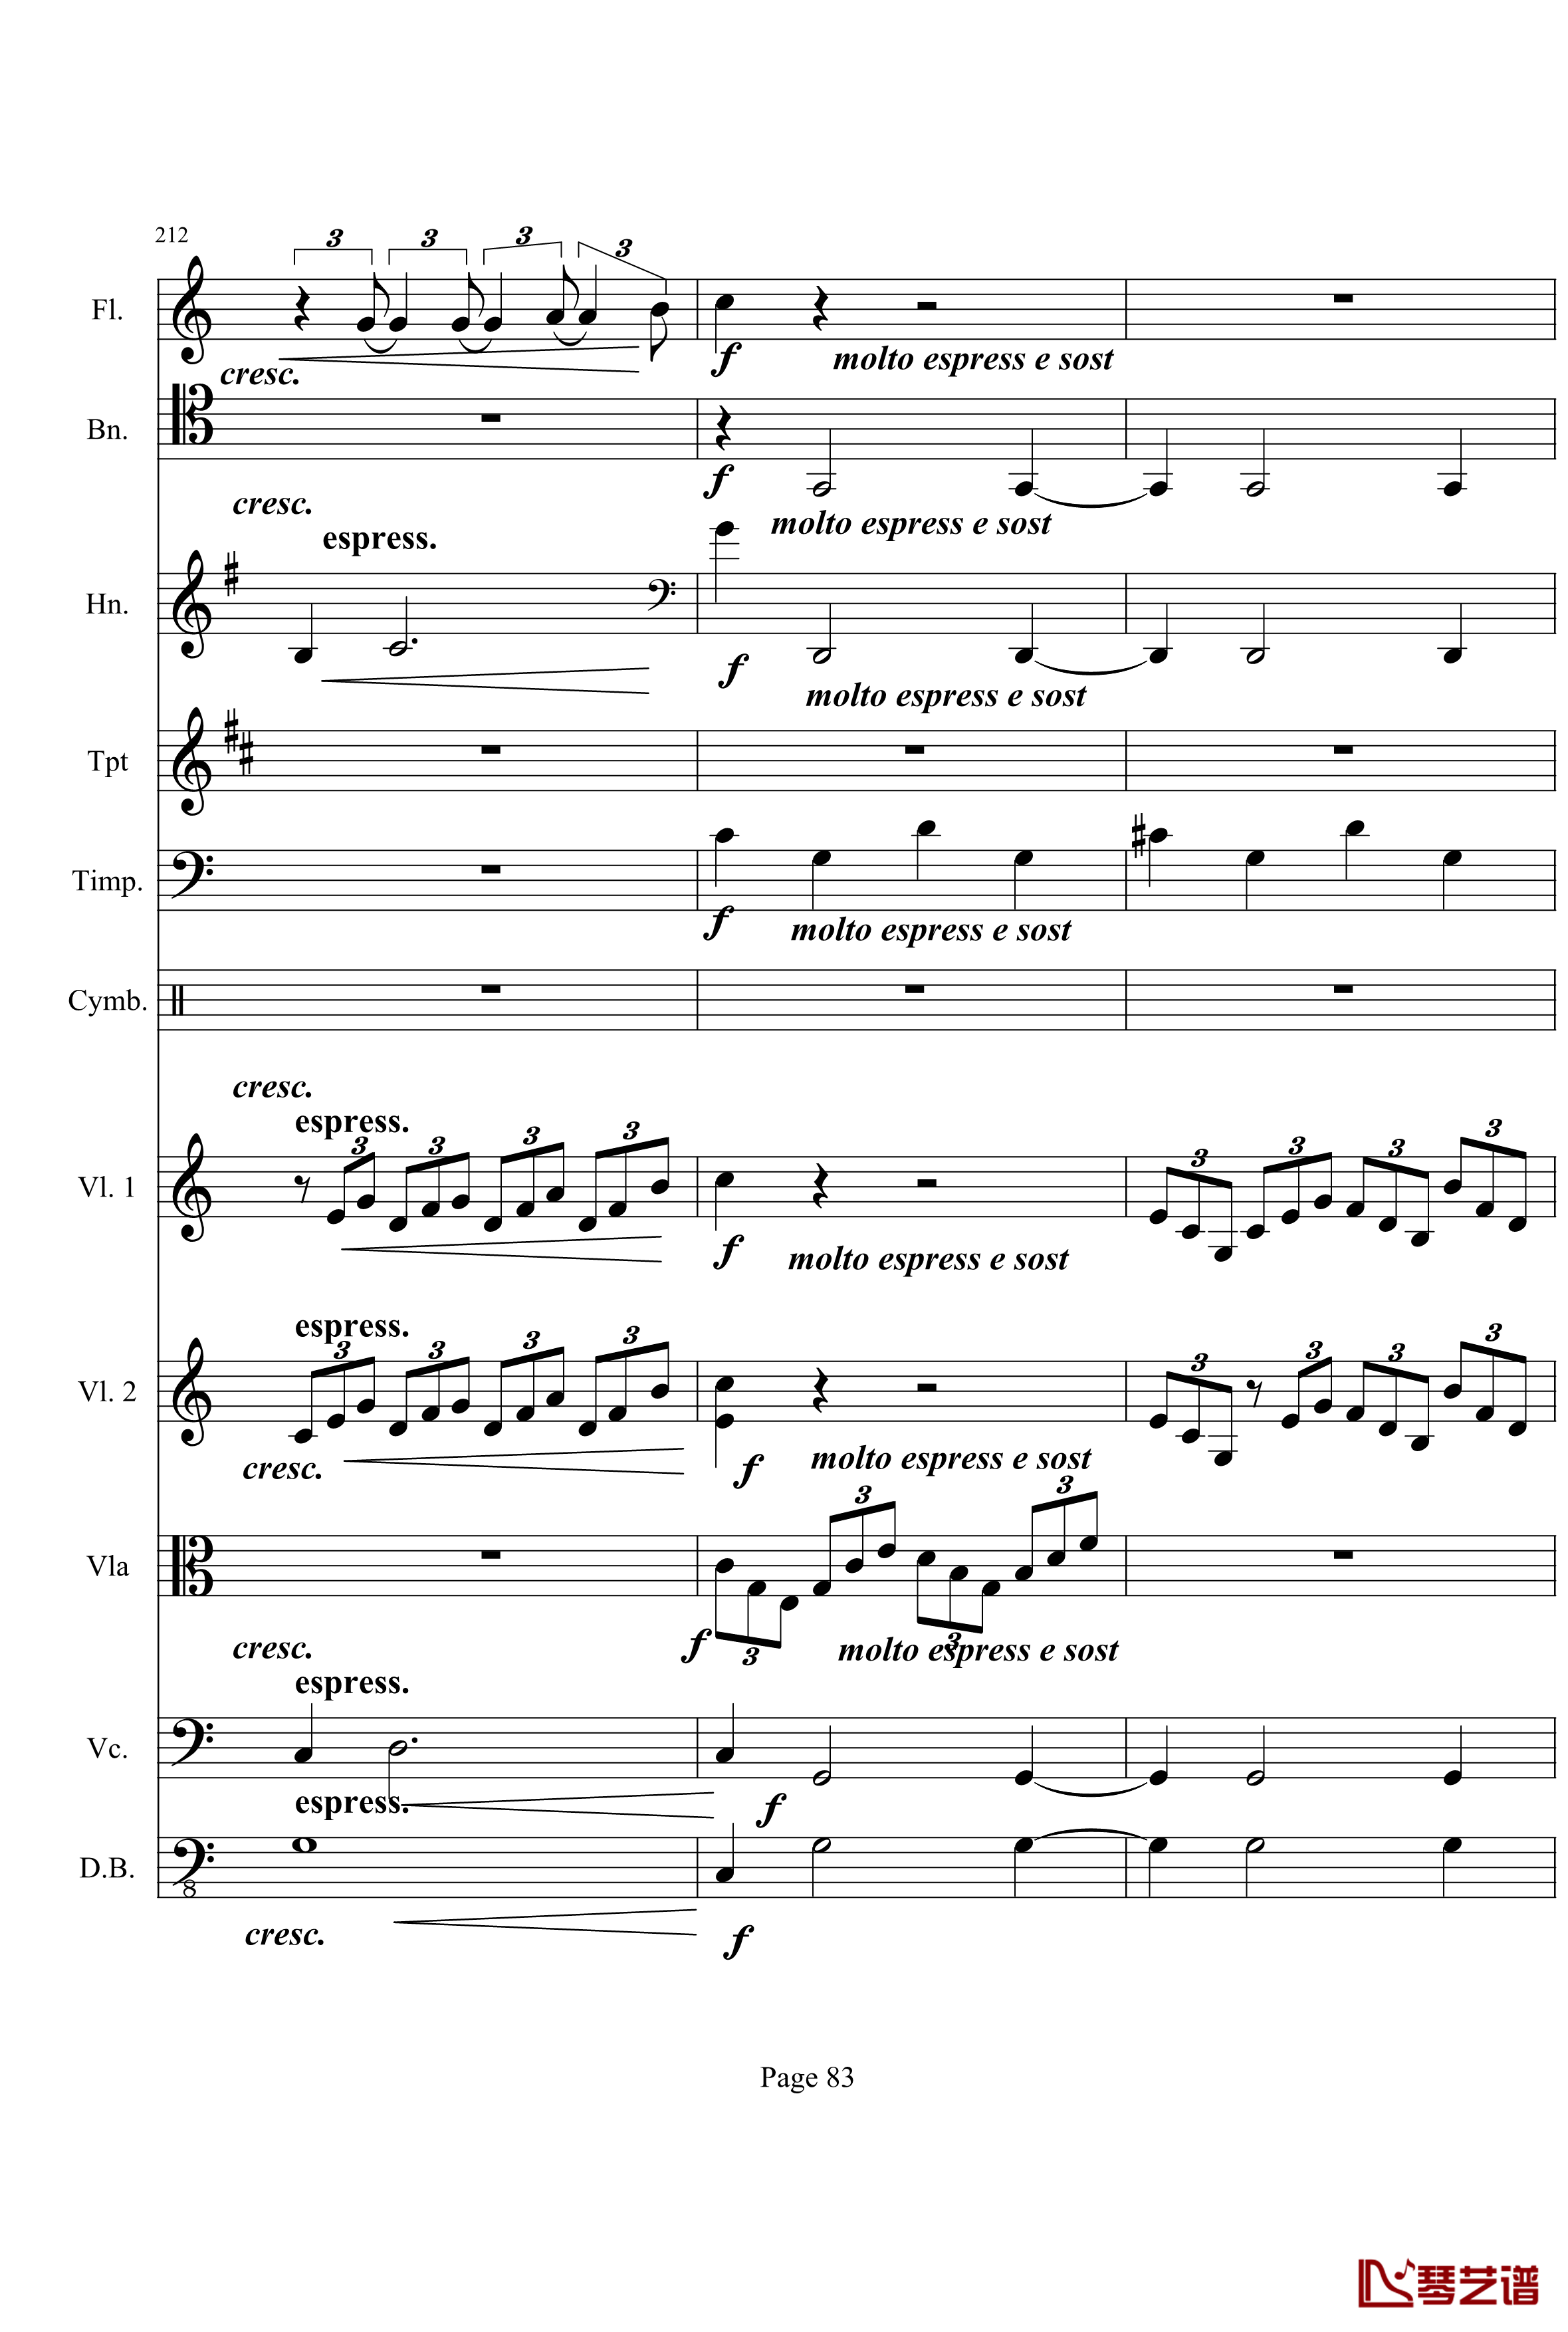 奏鸣曲之交响钢琴谱-第21-Ⅰ-贝多芬-beethoven83